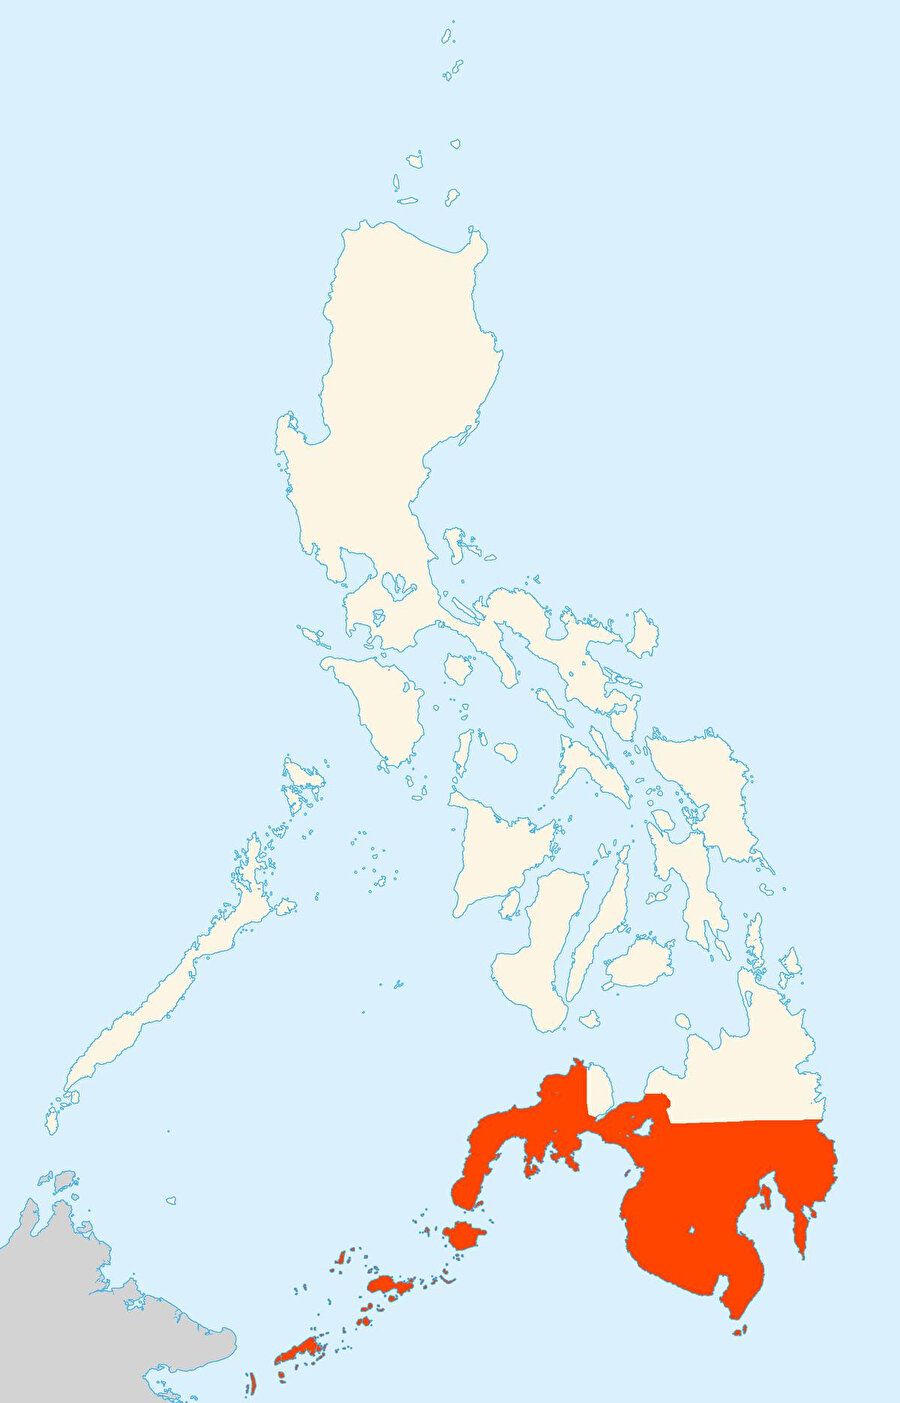 Moro, resmi adıyla Mindanao, Filipinler'i oluşturan 7 binden fazla adanın güney kısmında yer alır.